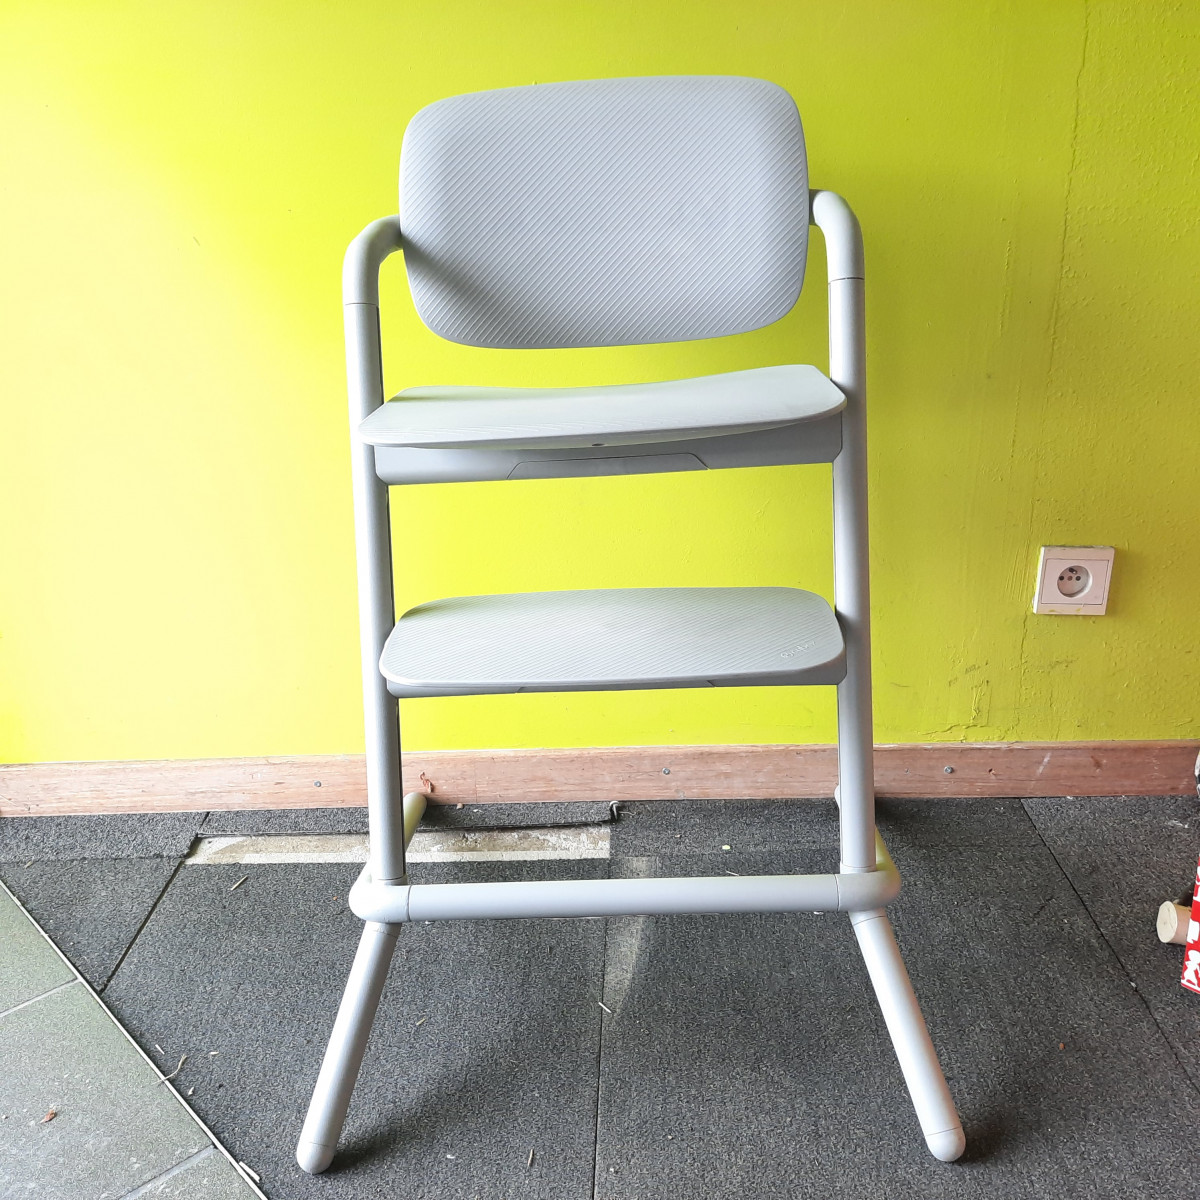 Chaise haute Cybex avec coque nouveau né + accesoires - photo 6